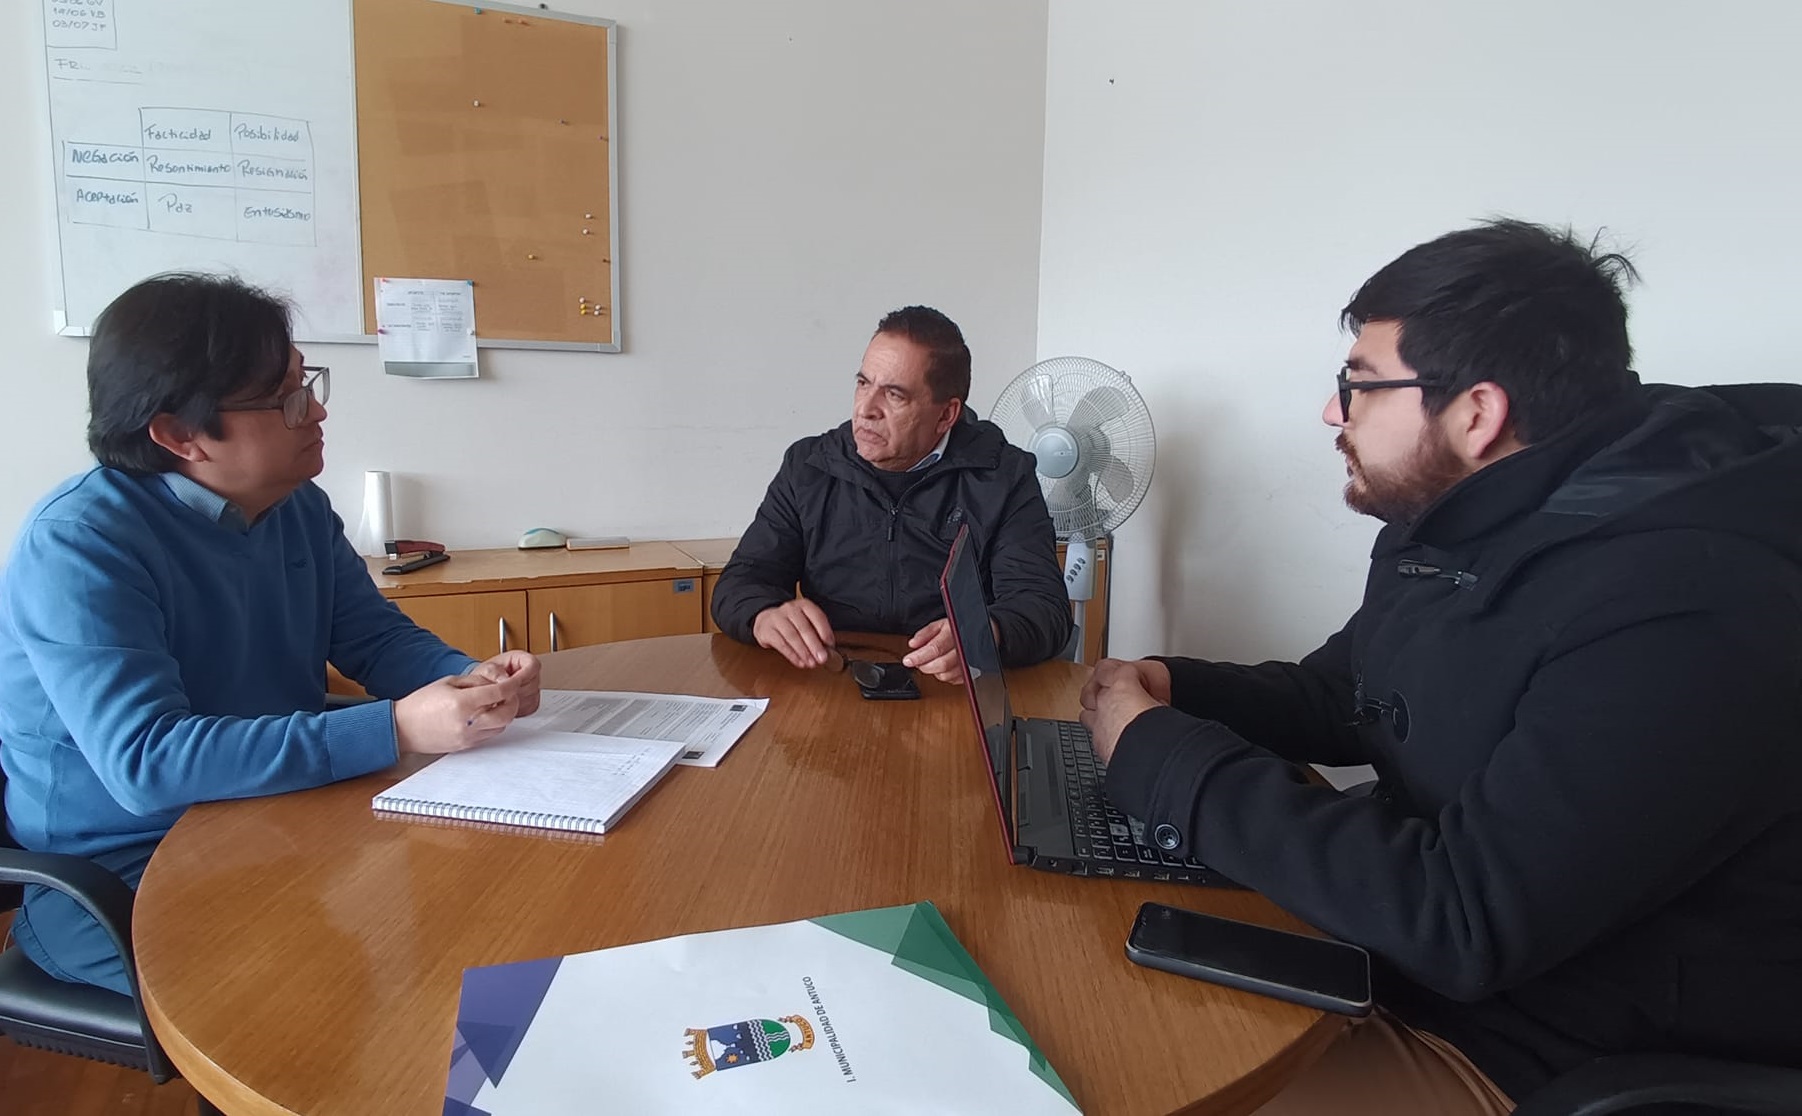 Alcalde Miguel Abuter León de Antuco gestiona recursos para dos nuevas ambulancias para la comuna